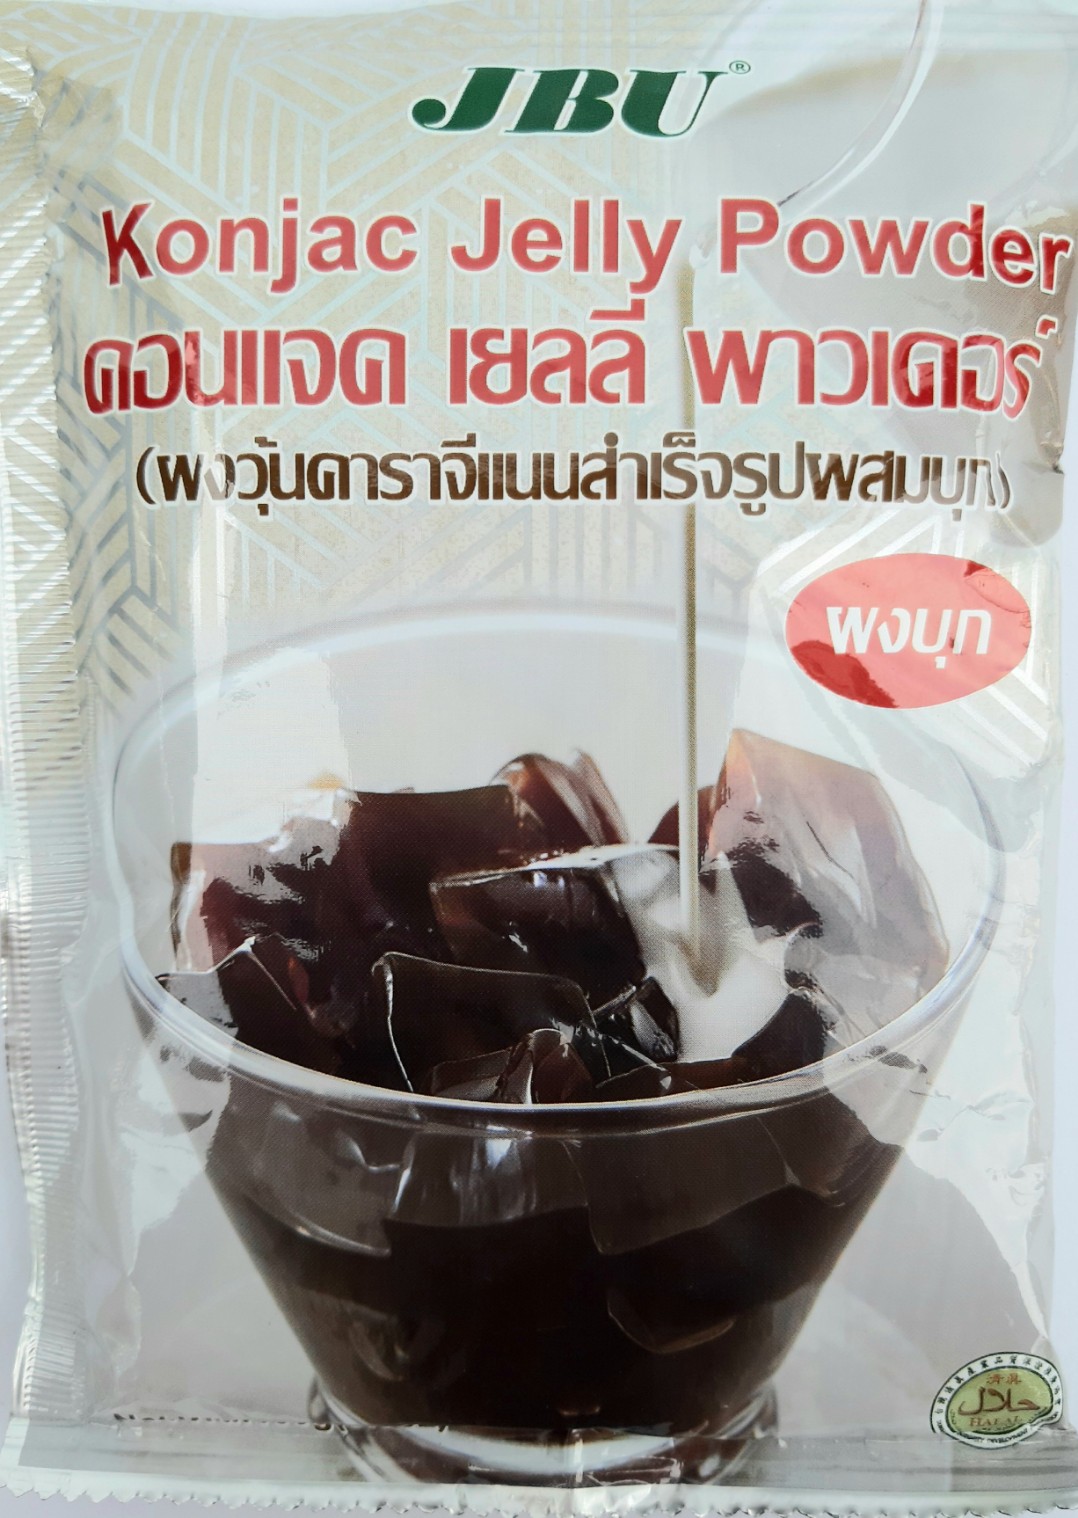 ผงวุ้นคาราจีแนนสำเร็จรูปผสมบุก คอนแจค เยลลี่ พาวเดอร์ Konjac Jelly Powder JBU น้ำหนัก 100 กรัม